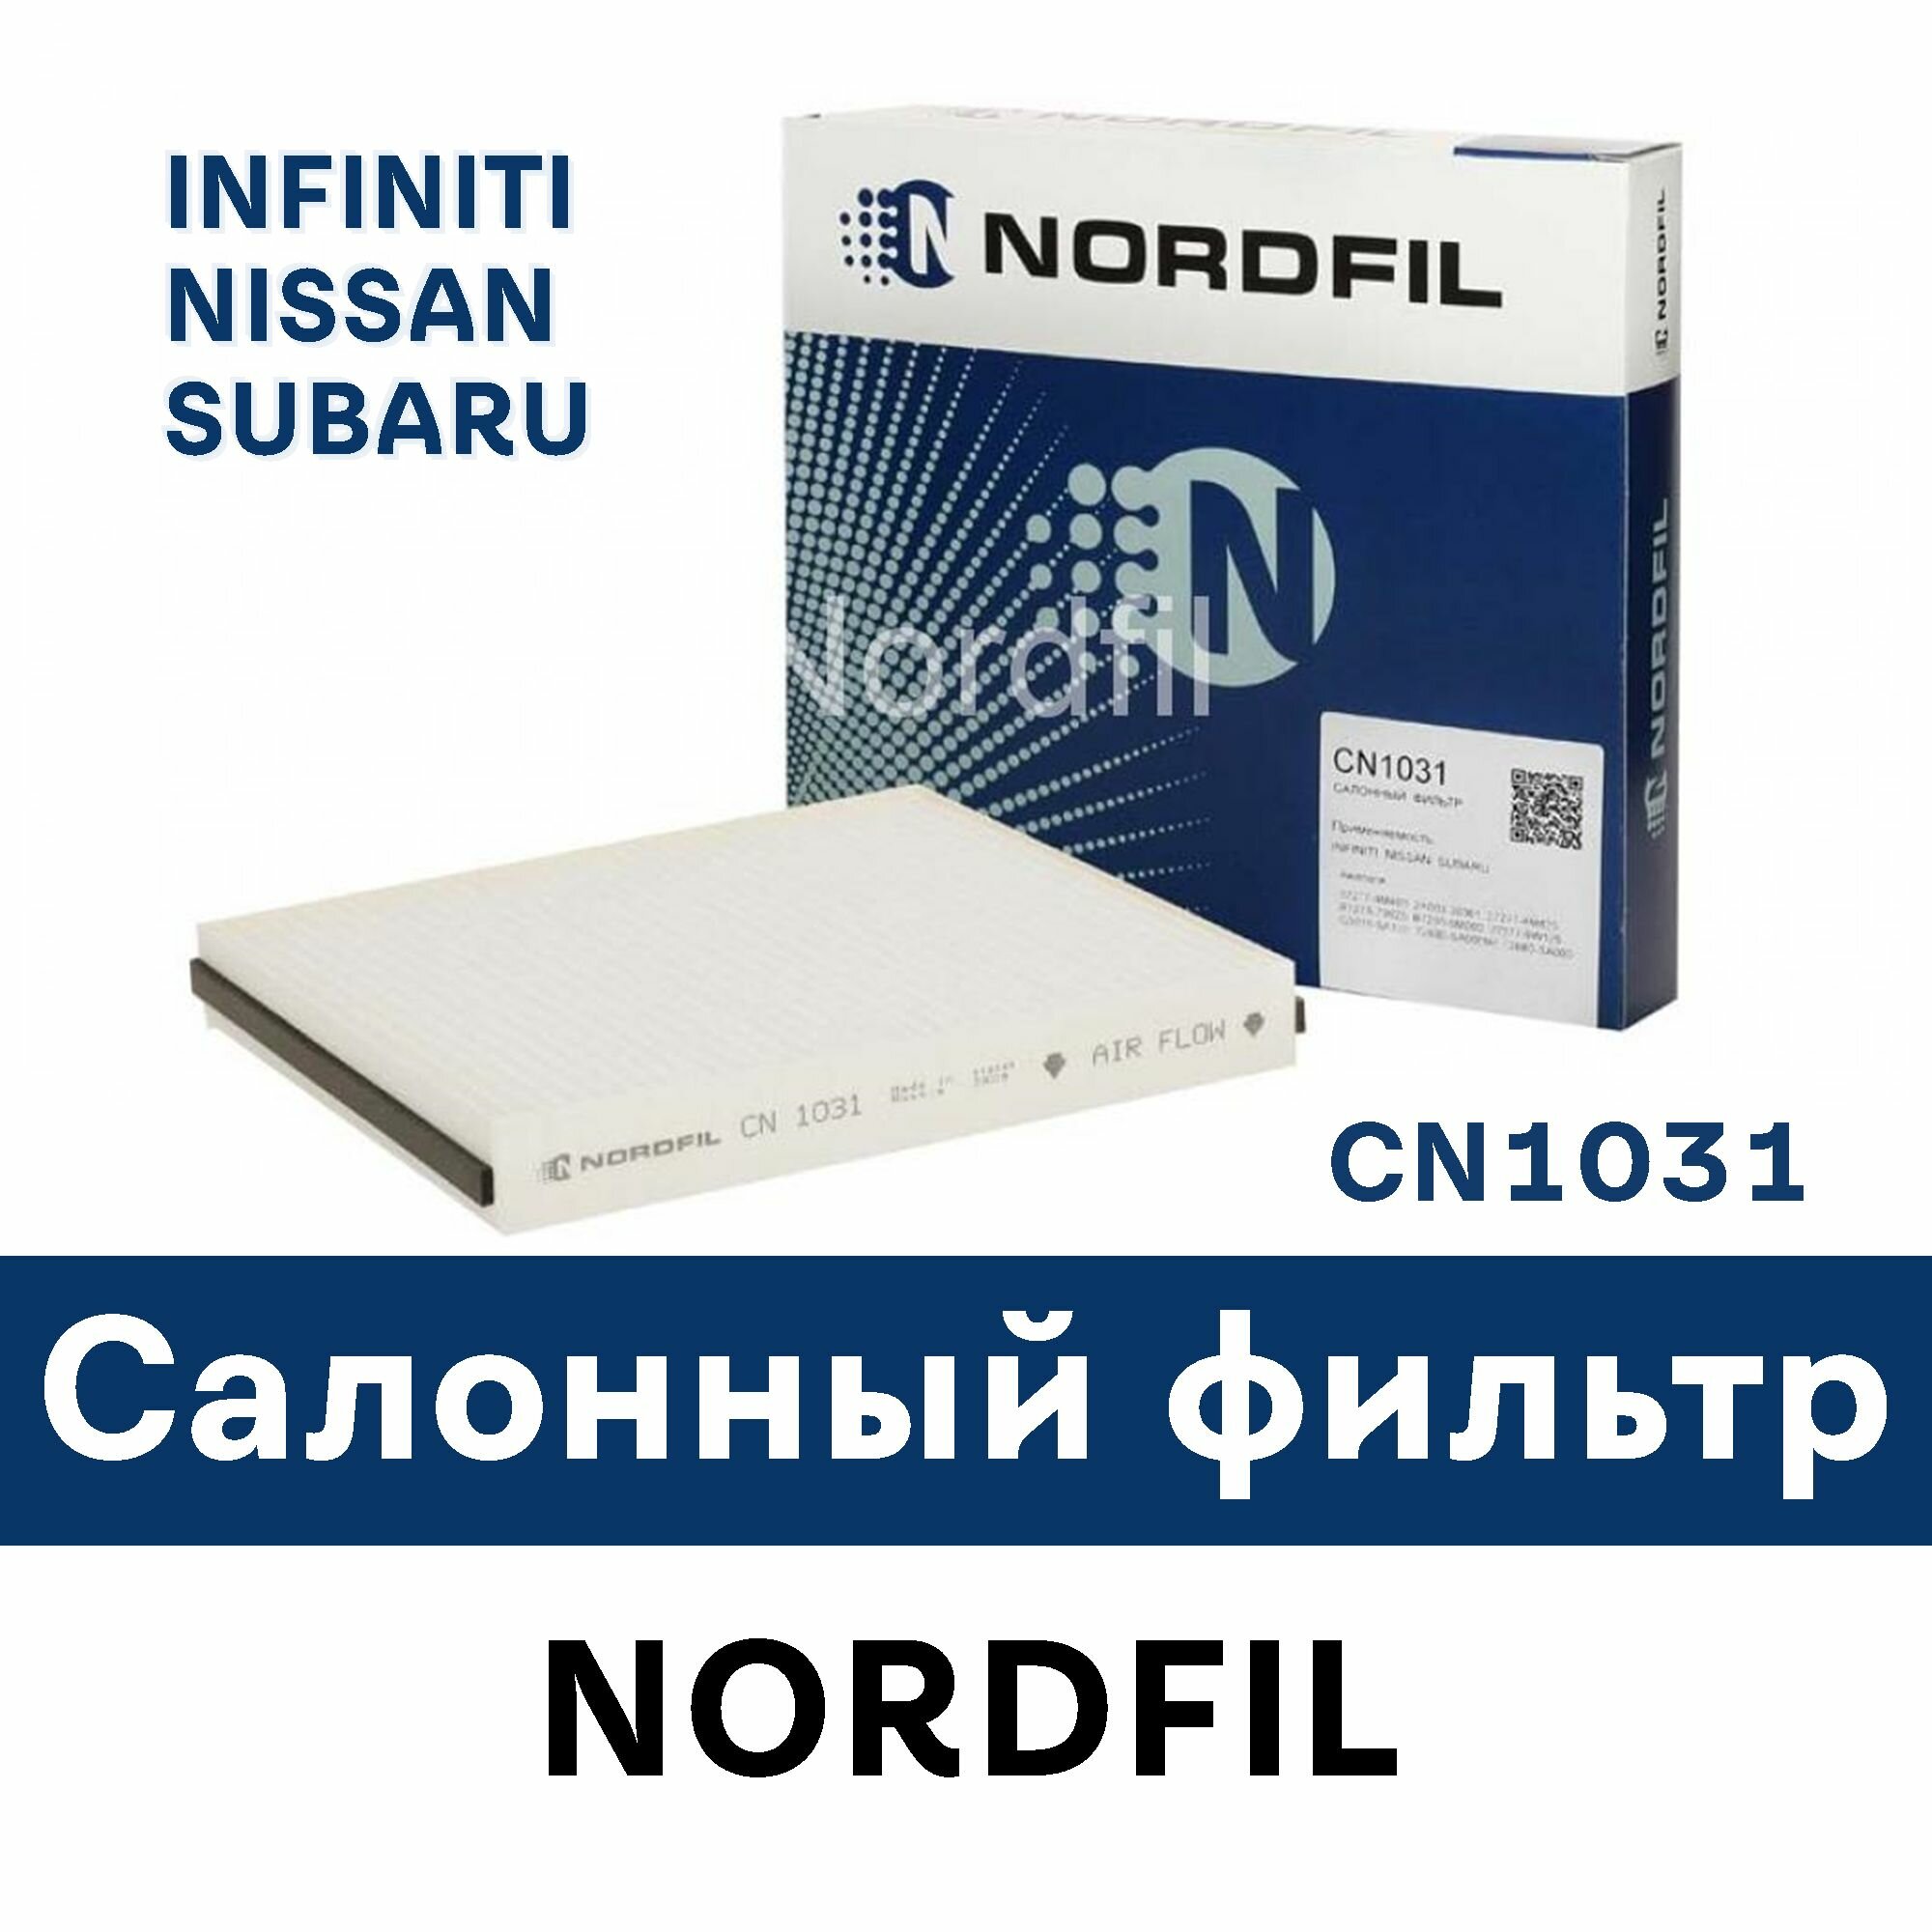 Салонный фильтр для INFINITI NISSAN SUBARU CN1031 NORDFIL